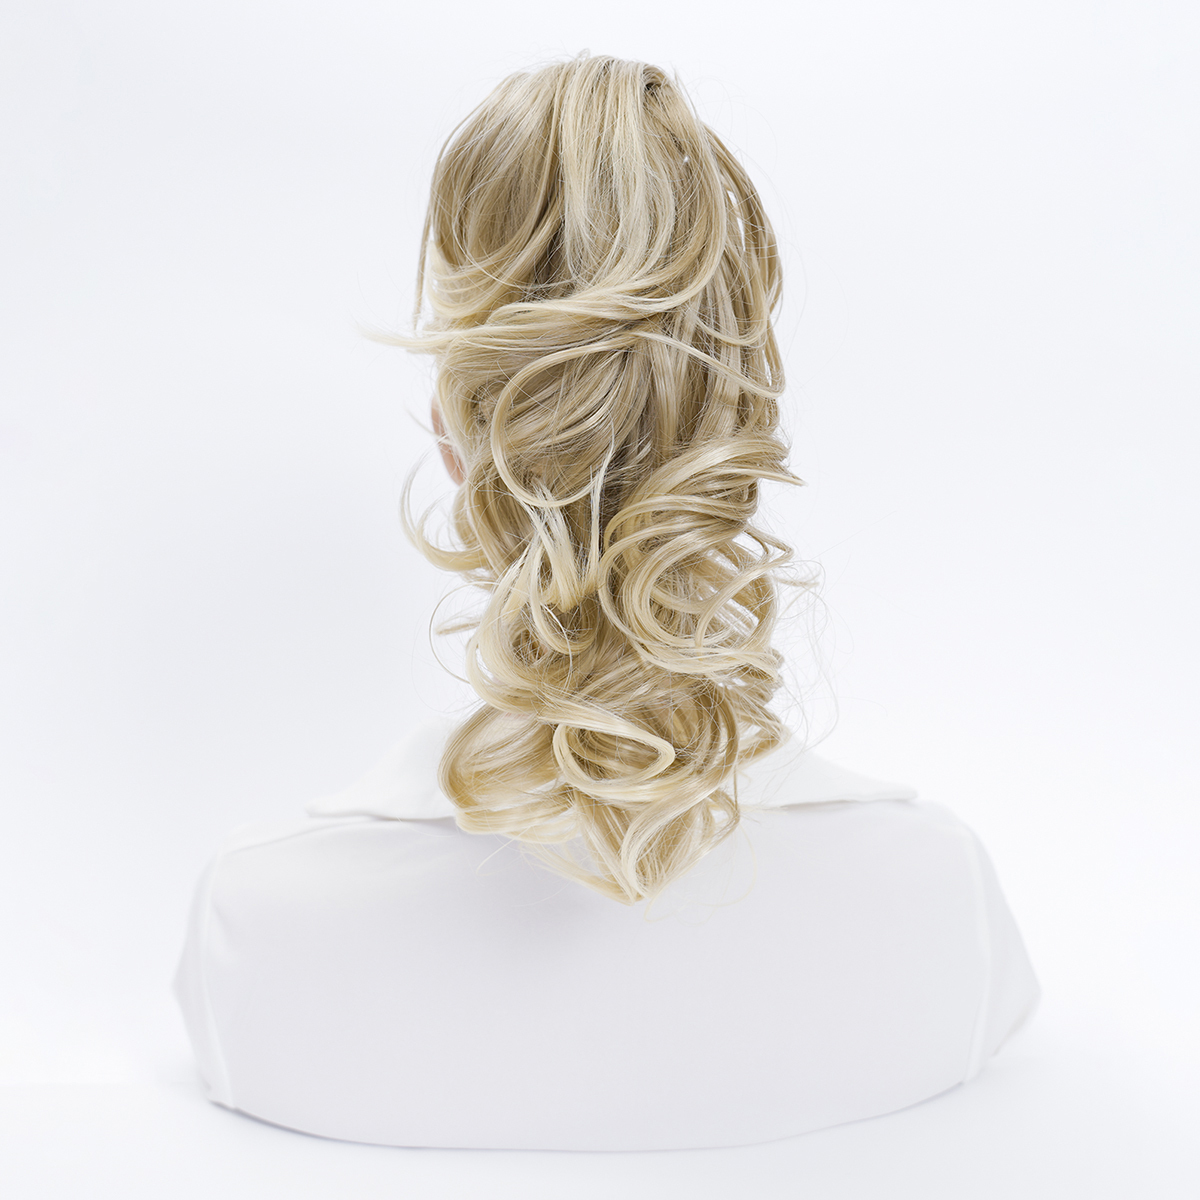 

Grab Clip Wig Ponytail Short Golden Long Curly Hair Big Wave, Natural Fake Hair